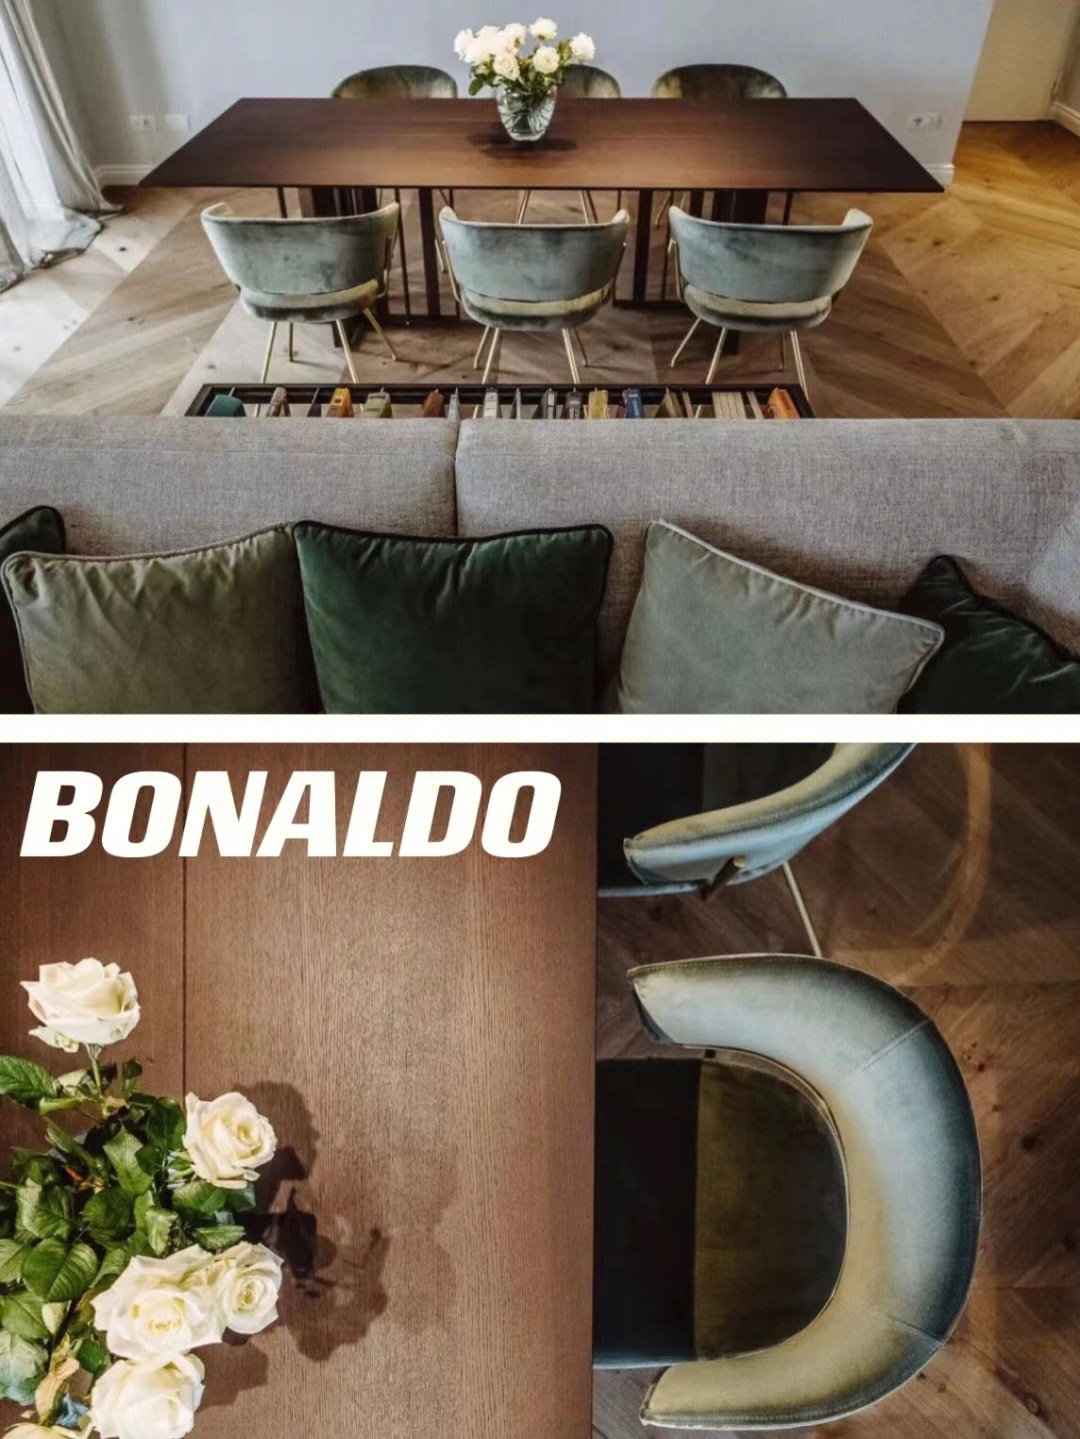 意大利著名家具品牌bonaldo,在米兰打造了一个复古优雅的现代公寓